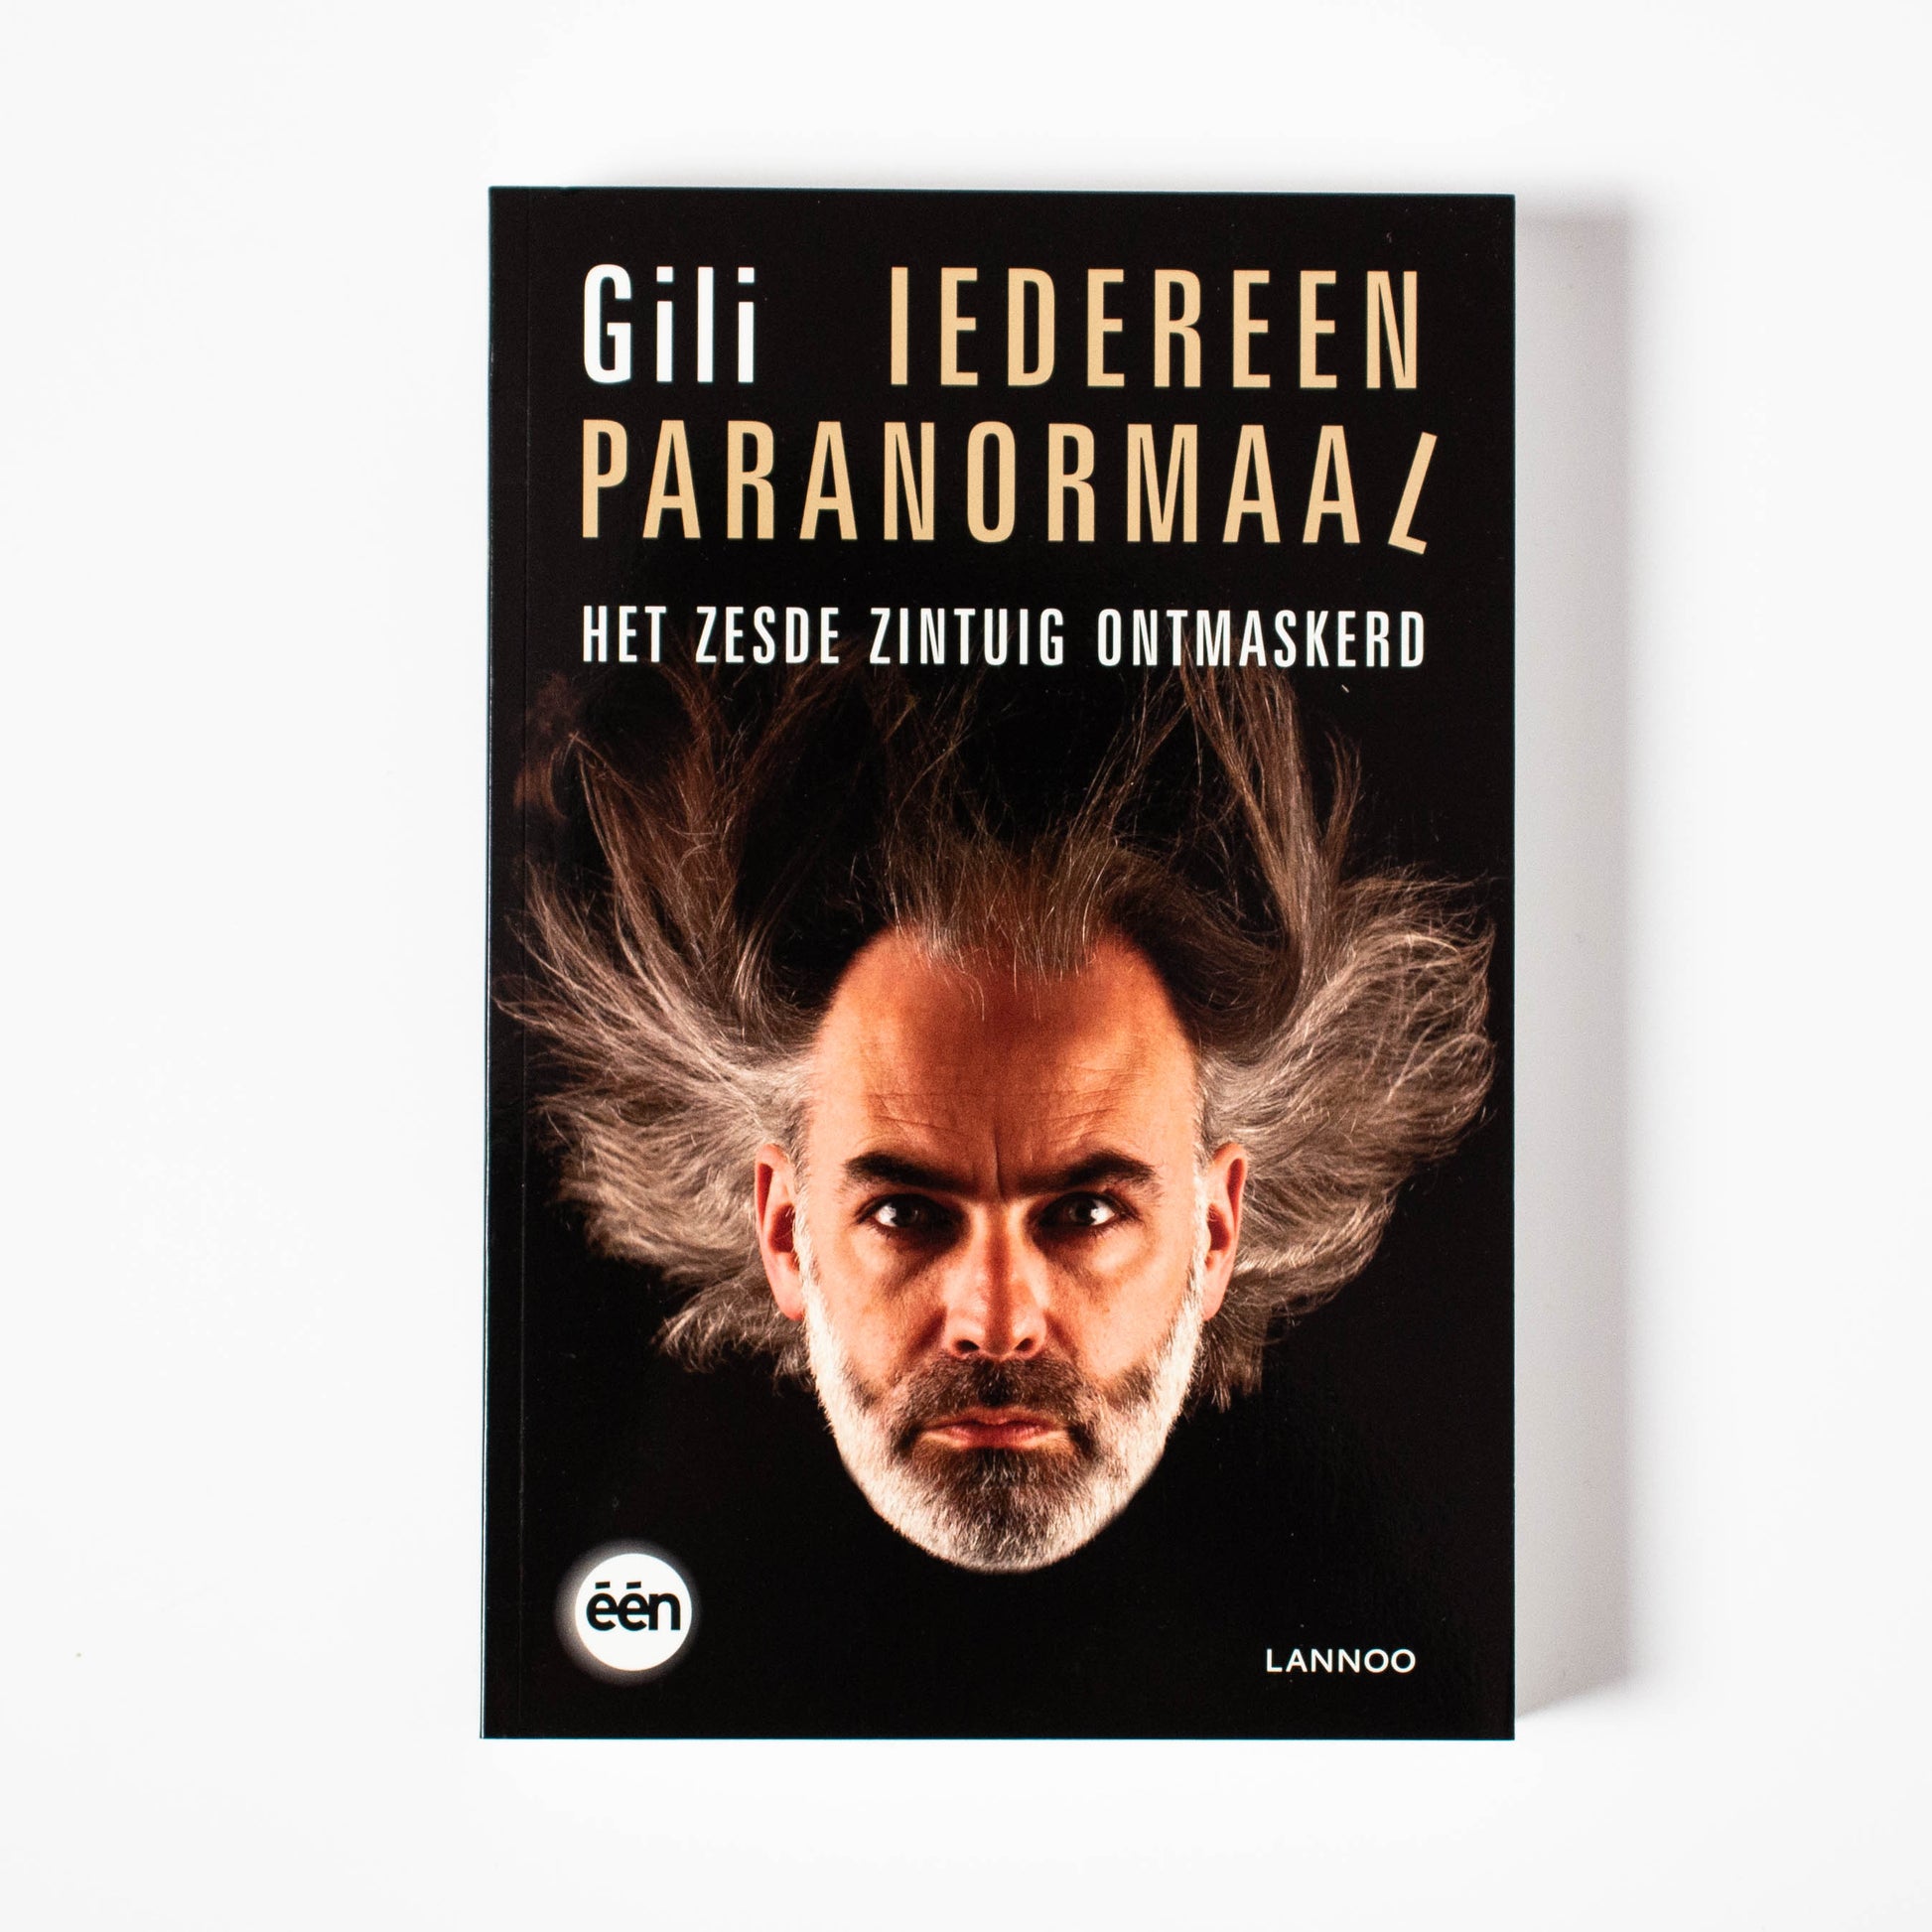 Gili - "Iedereen paranormaal" (boek)